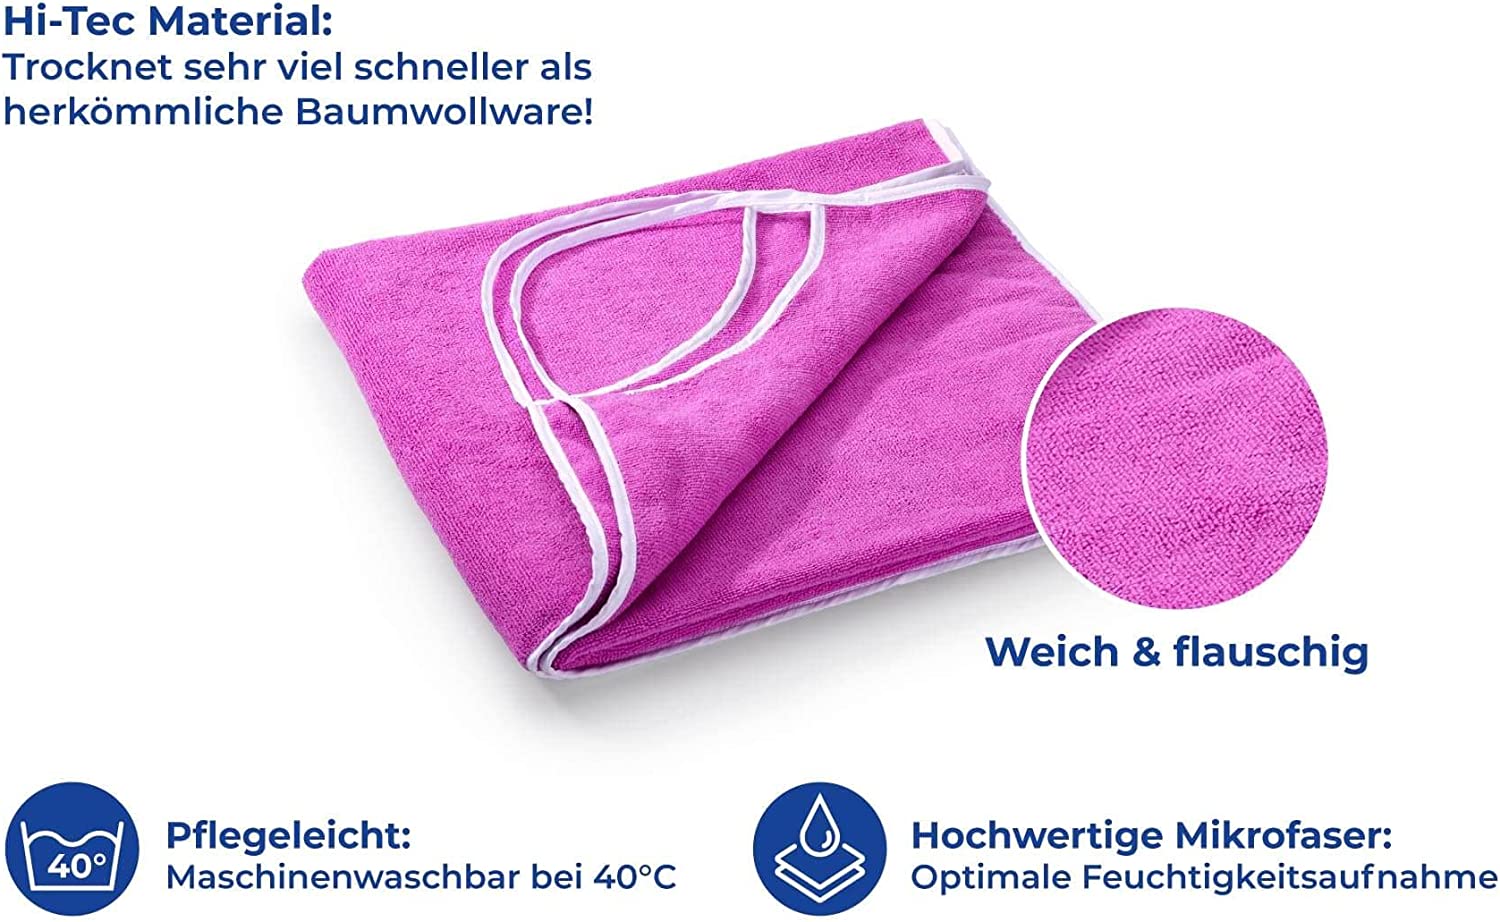 Wickel-Duschtuch Strandkleid Gr. M, Smartes Multifunktionsbadetuch als Handtuch & Strandkleid tragbar, Das tragbare Handtuch mit Trägern ohne Verrutschen, schnelltrocknend